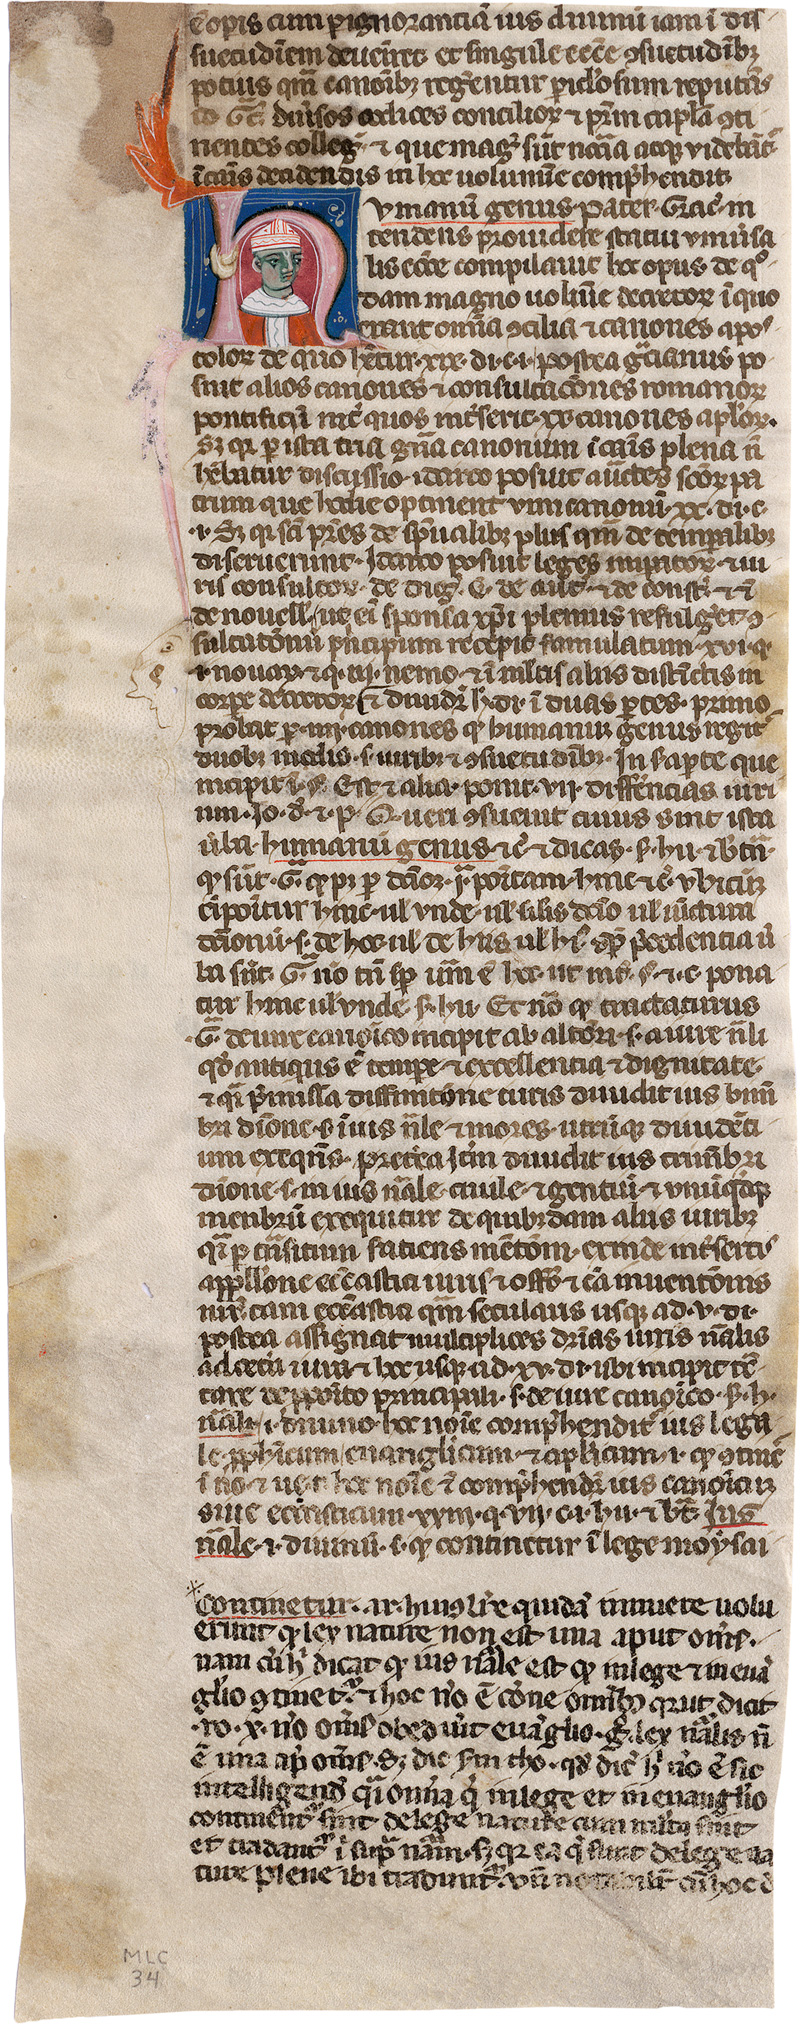 Lot 2855, Auction  123, Guido da Baysio, Rosarium decretalium. Fragmentblatt einer lateinischen Handschrift 